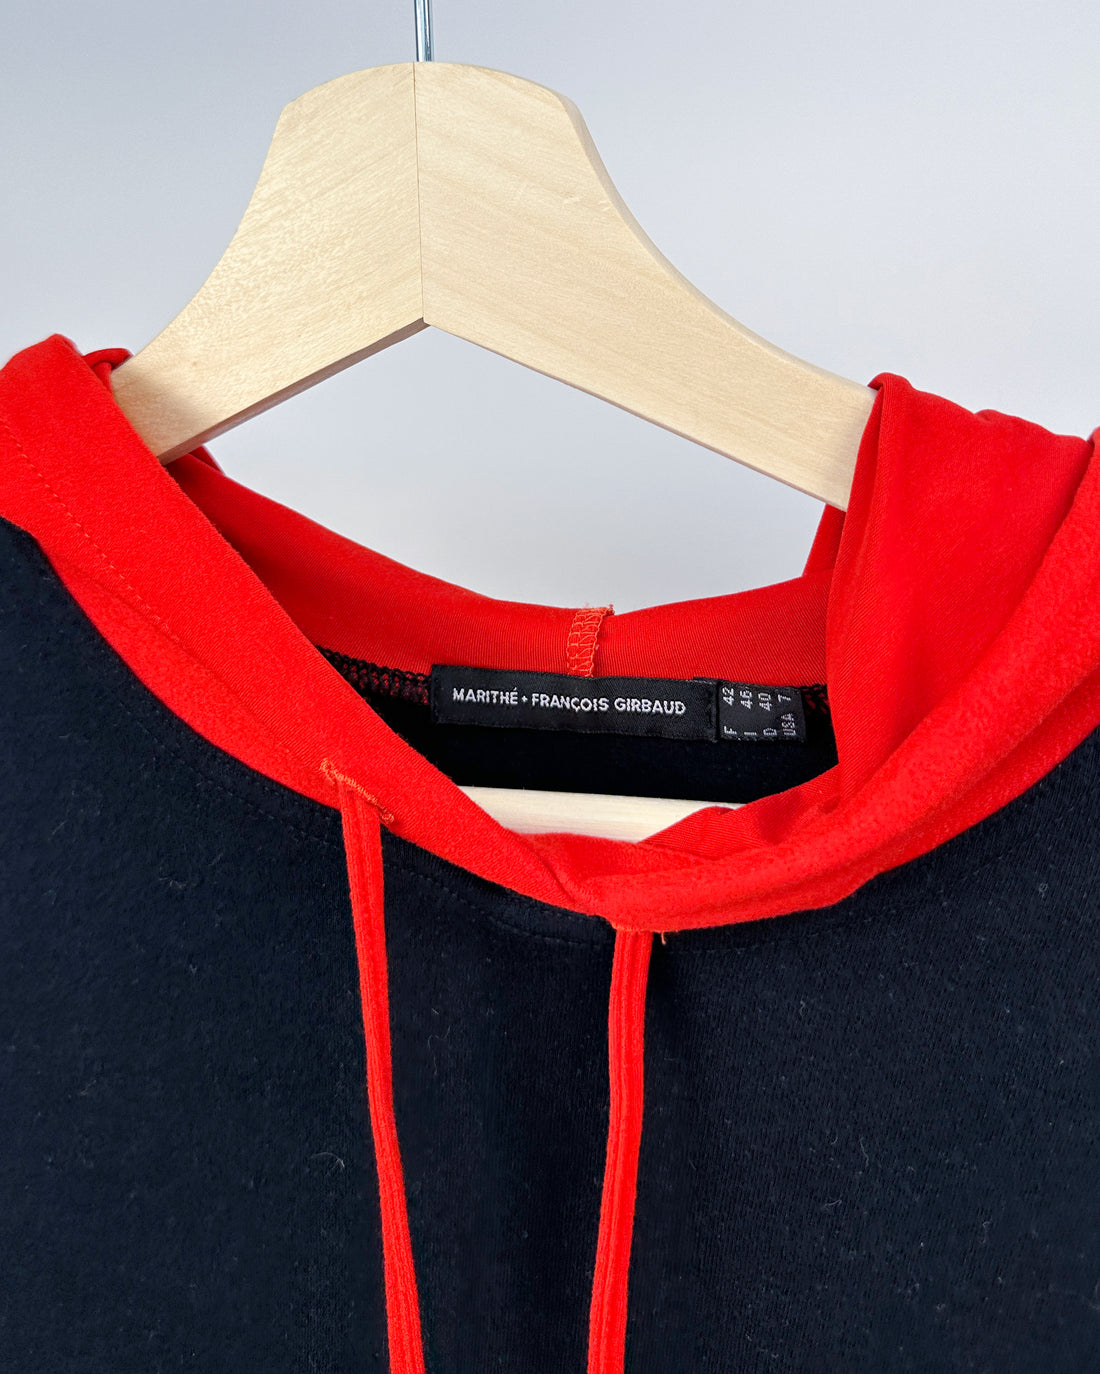 Marithé Francois Girbaud "Pocket" Hooded Dress 2000's